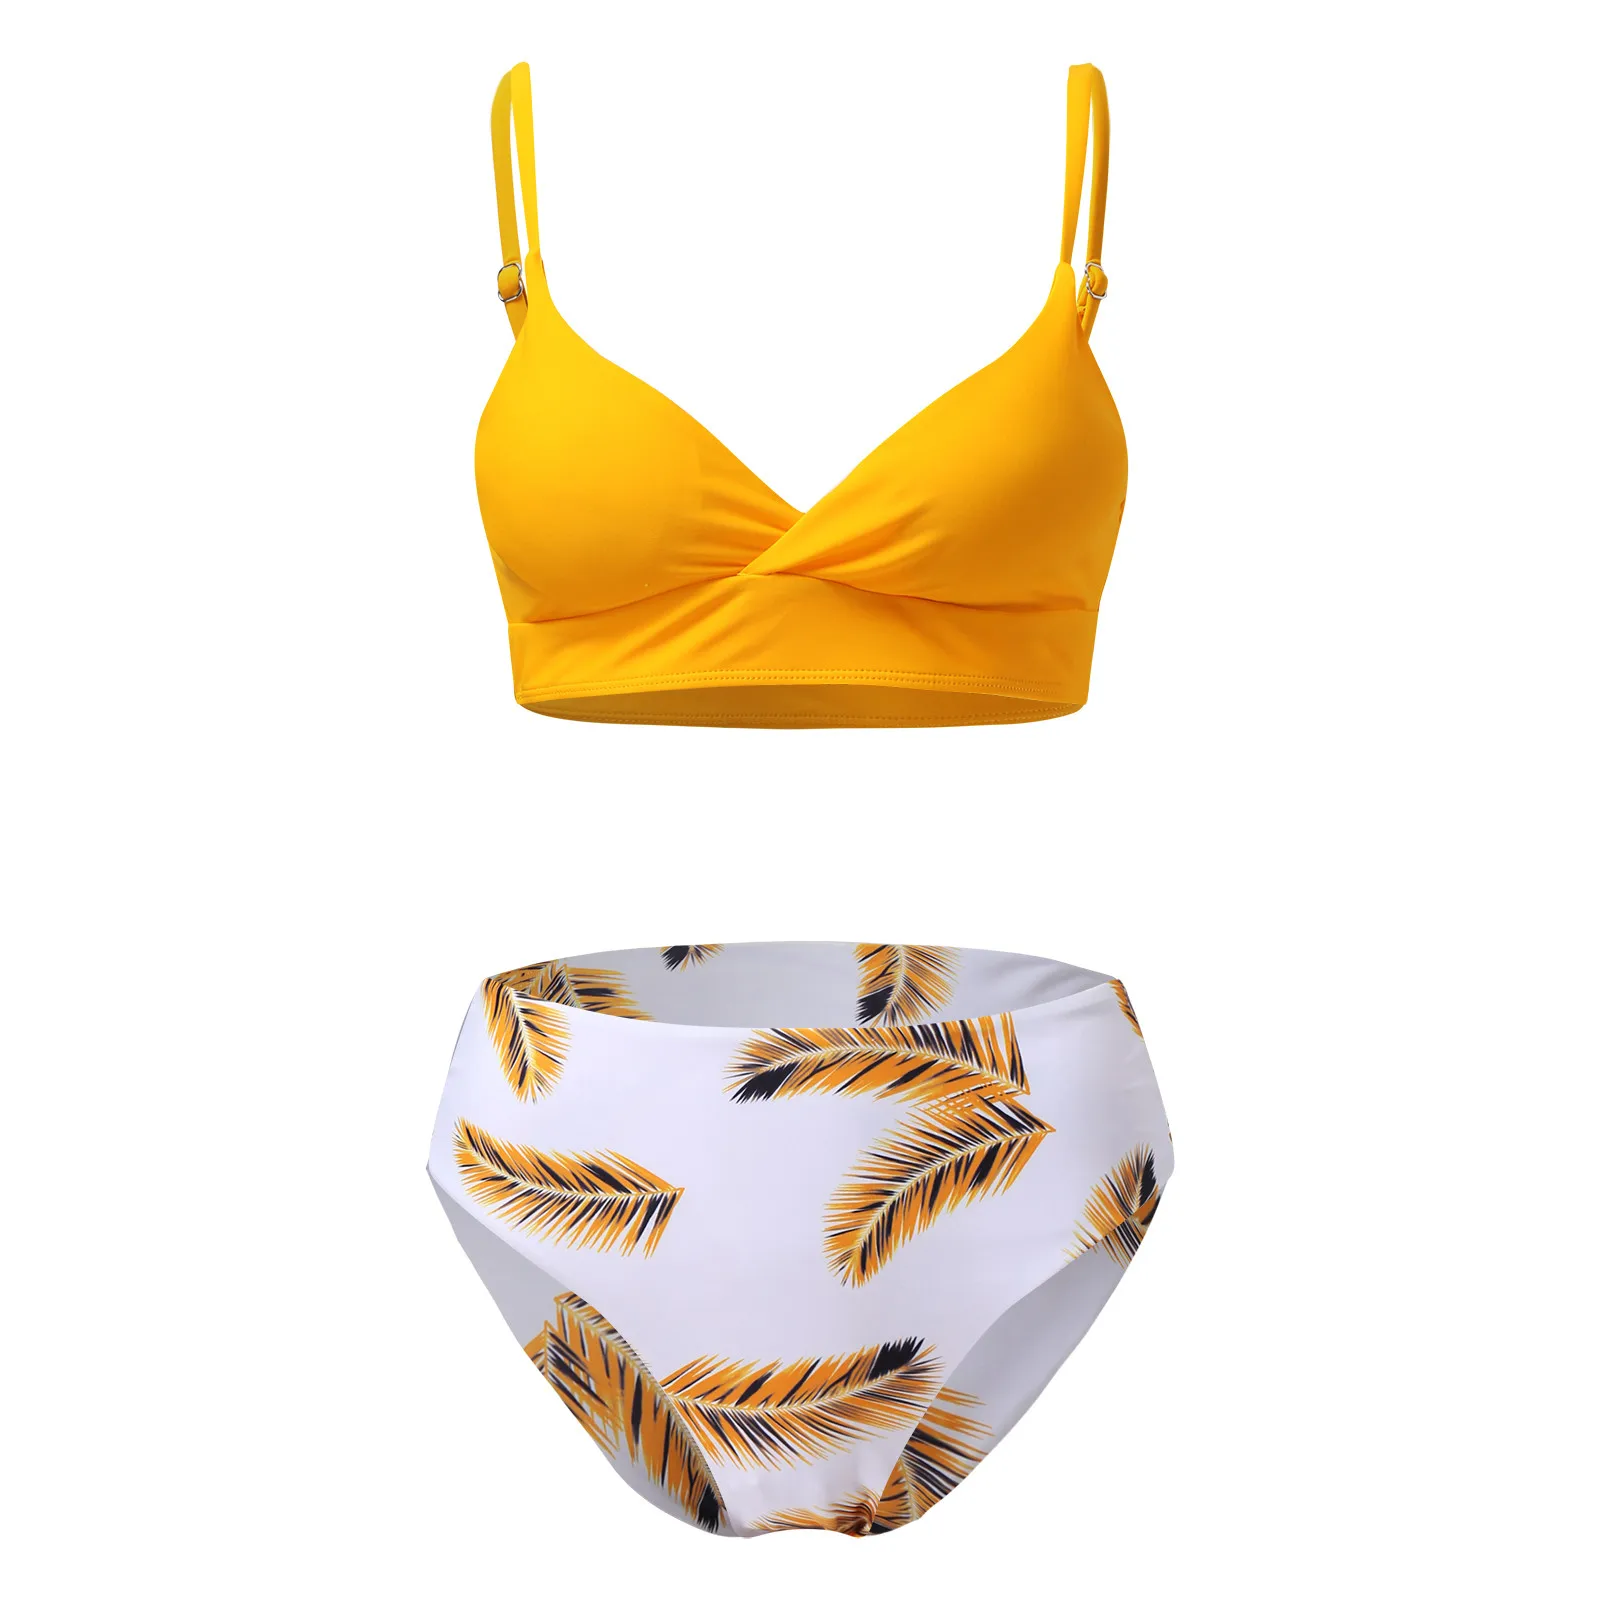 Swimsuit Yellow And Lemon Print Mid-Waist Bikini Set Swimsuit Women Sexy Lace Up Two Pieces Swimwear 2022 New Beach Bathing Suit string bikini set